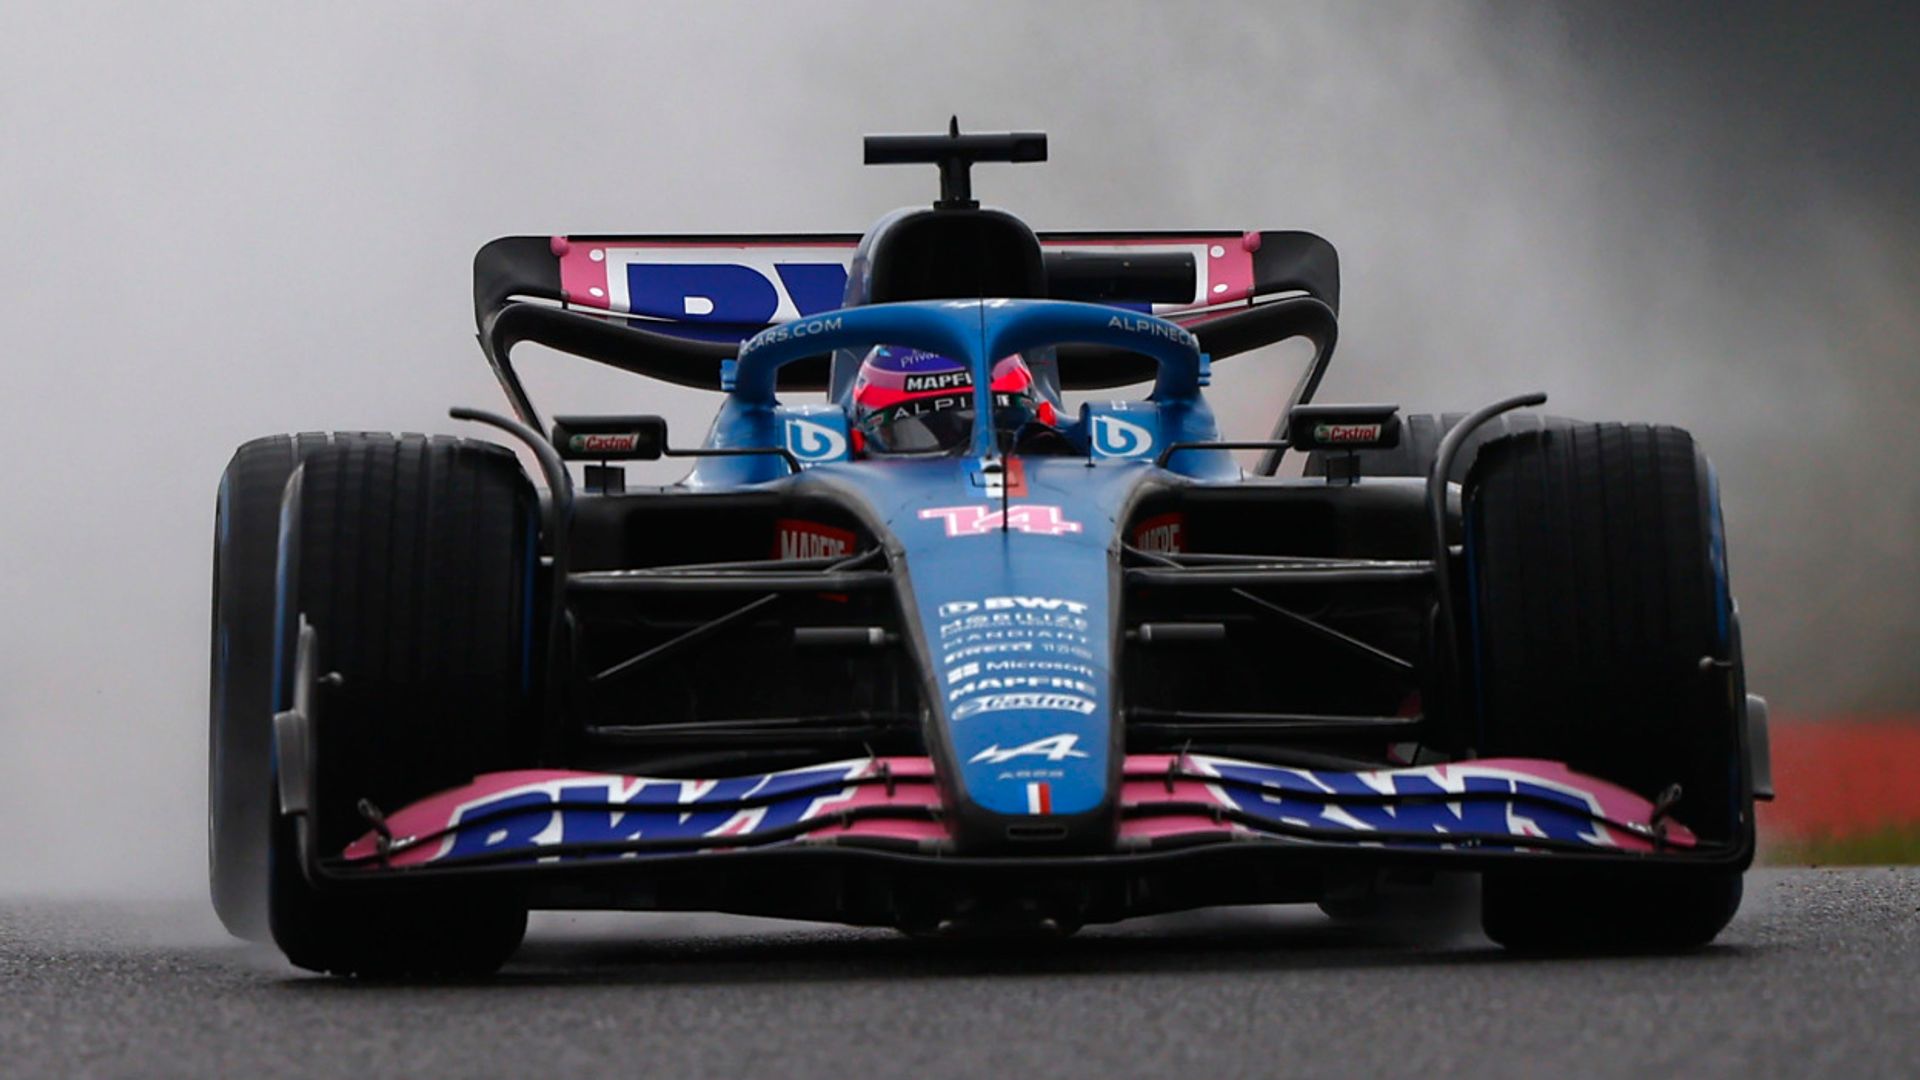 Alonso tops P1 on wet Suzuka return before Schumacher crash